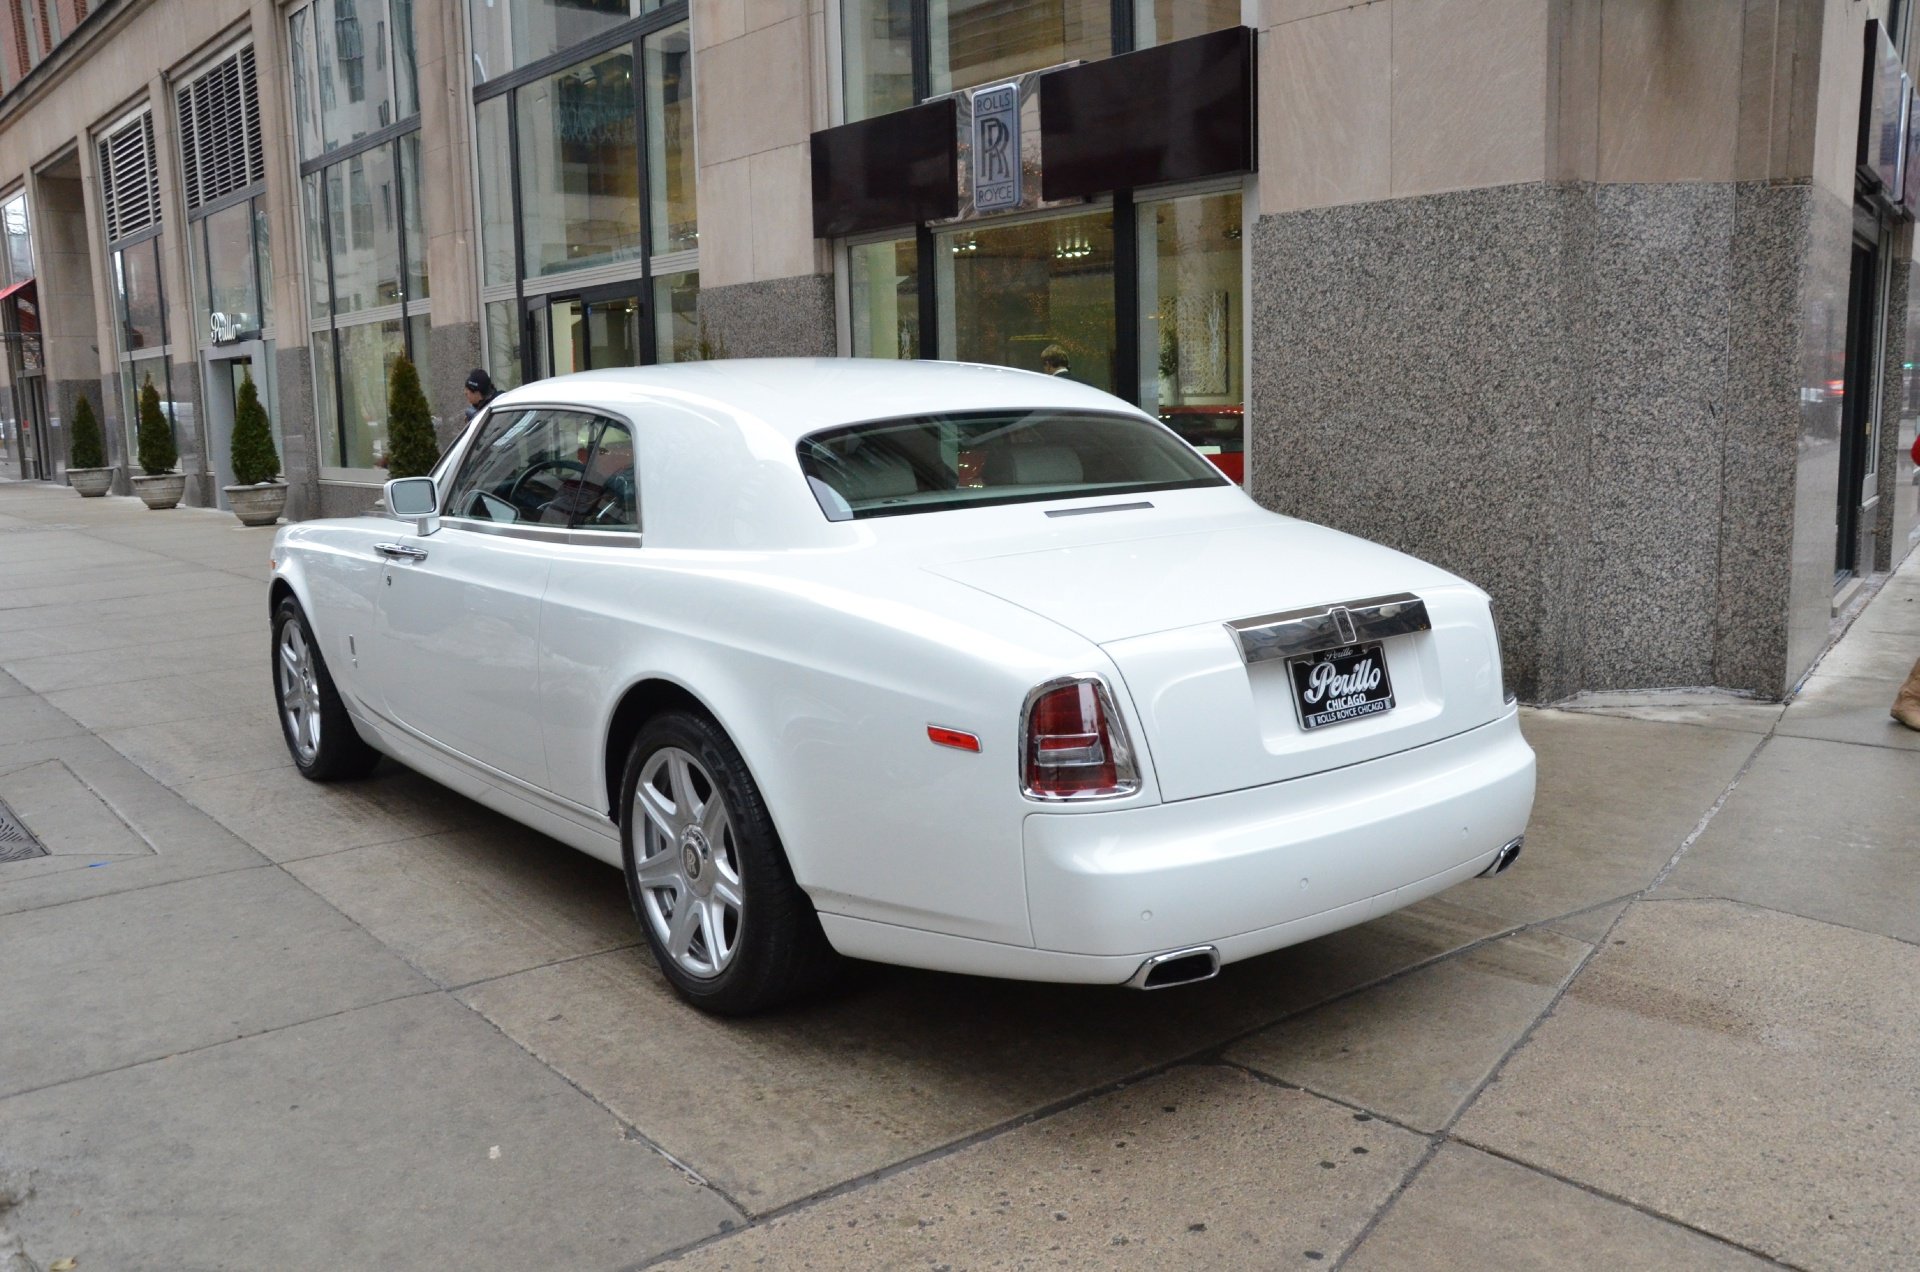 2009, Rolls royce, Phantom, Coupe, Cars, White Wallpaper